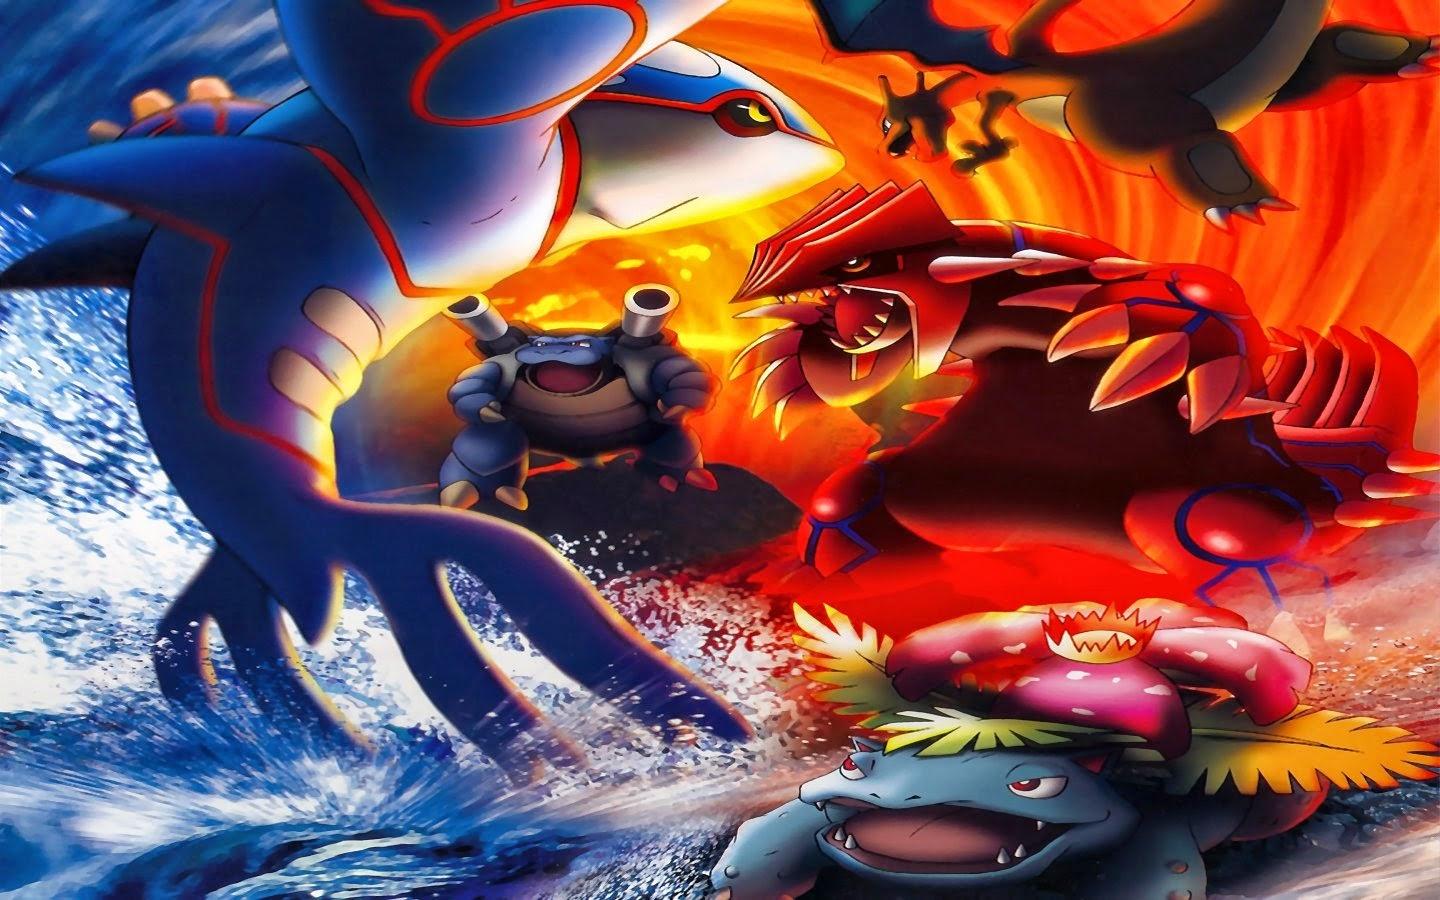 1440 x 900 · jpeg - Games Download Free: Pokemon Wallpaper